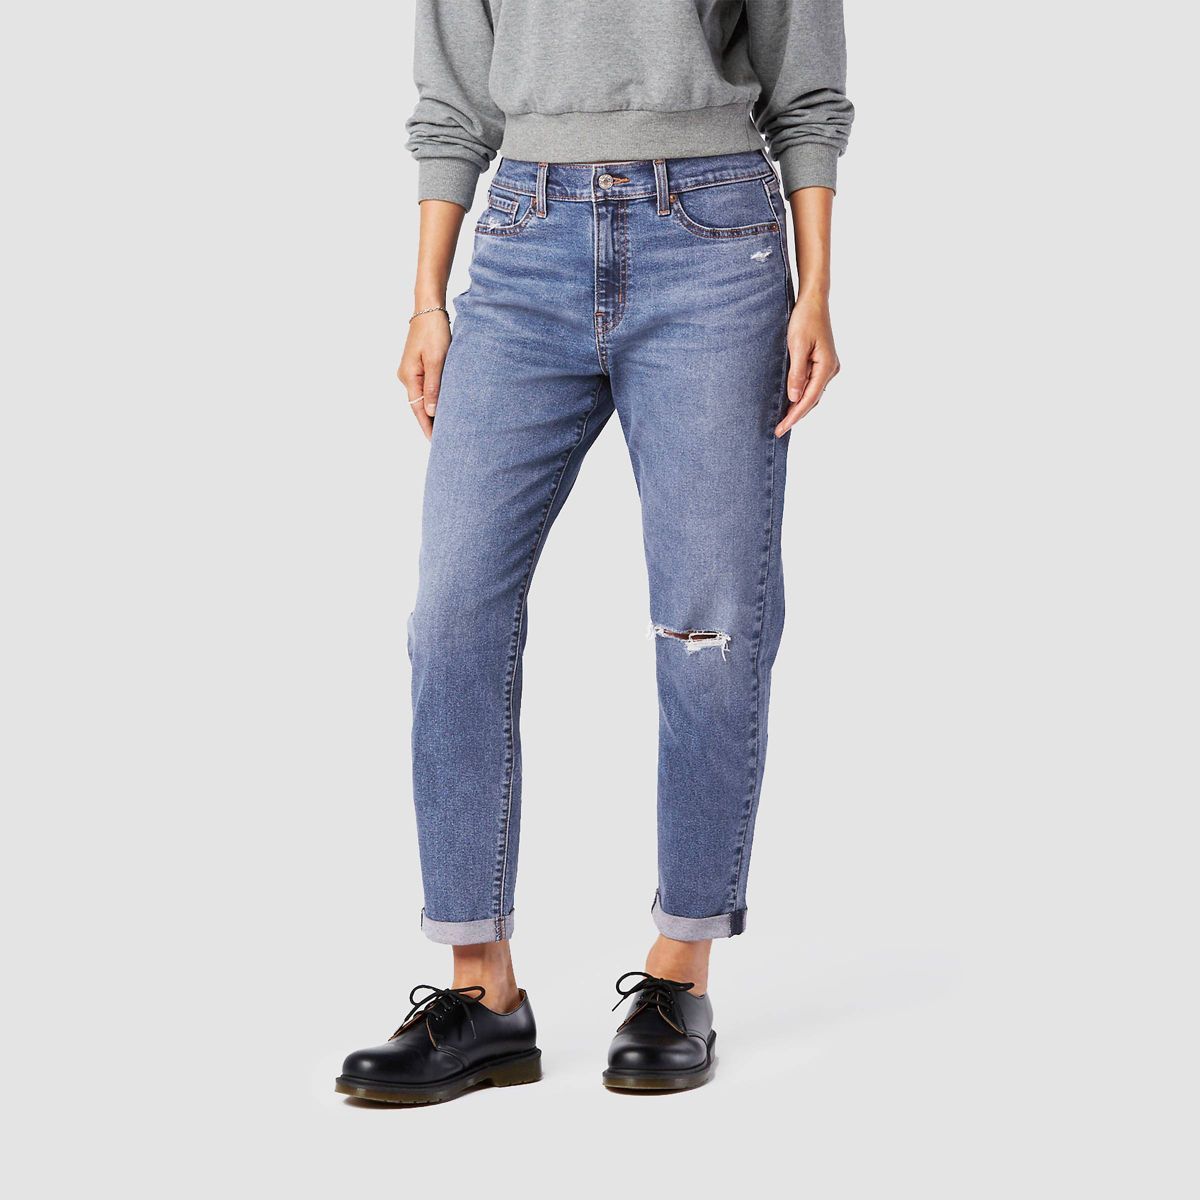 DENIZEN® from Levi's® Women's Mid-Rise Cropped Boyfriend Jeans | Target